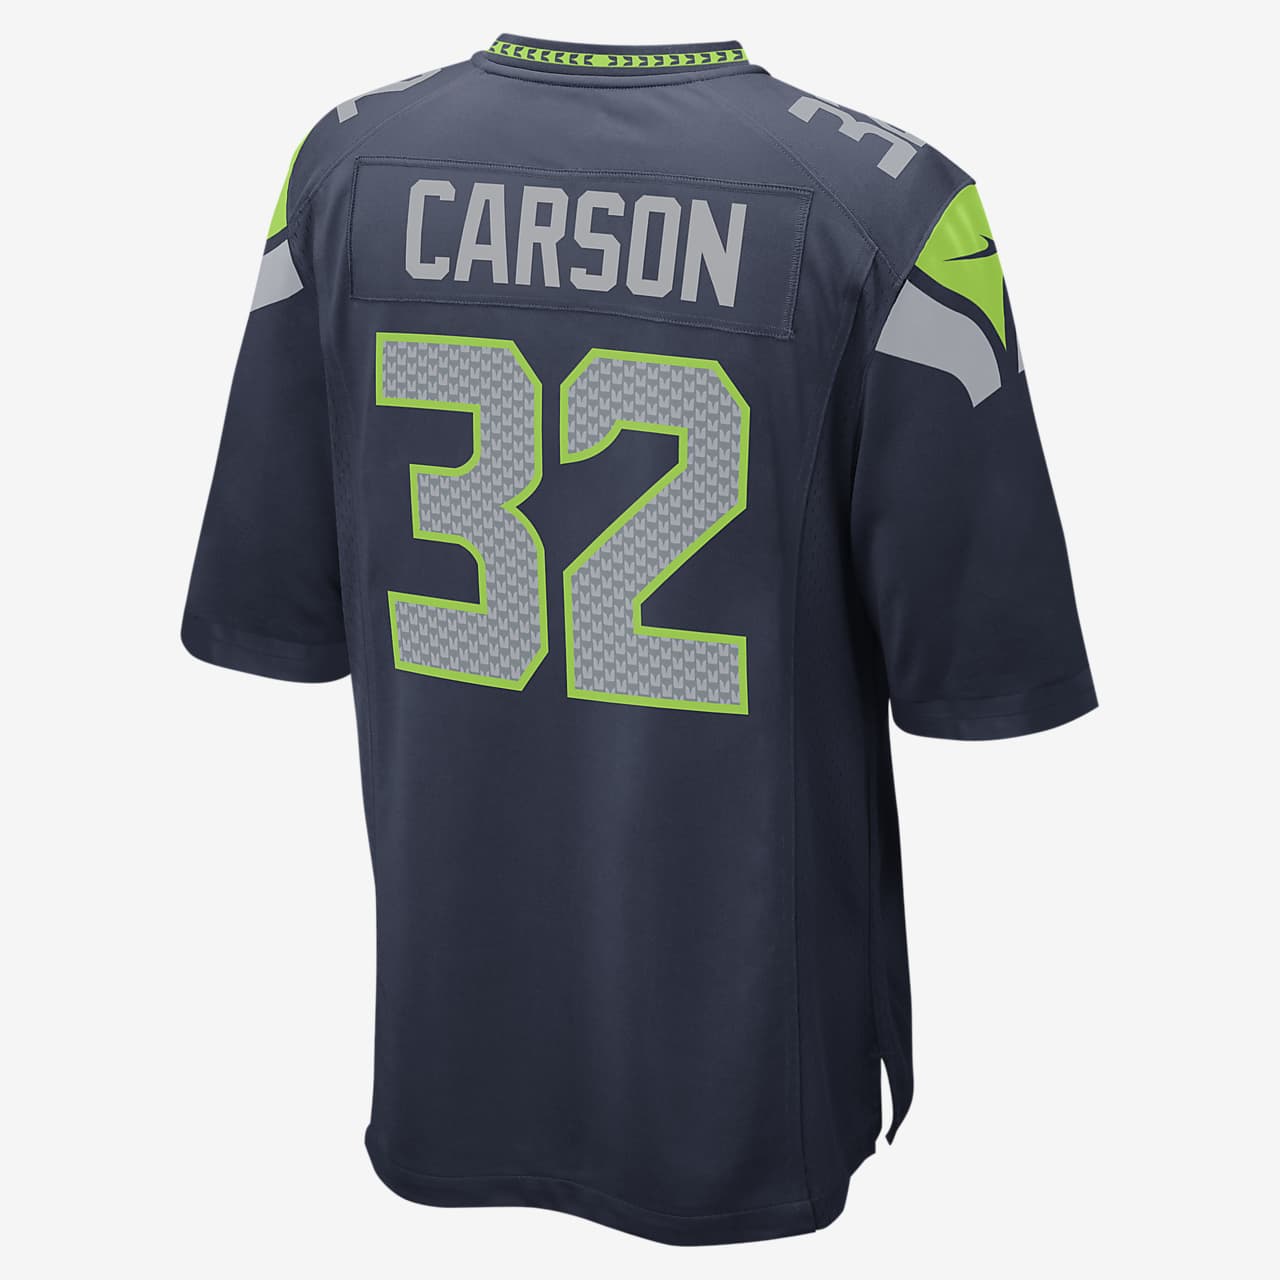 دوتس جده NFL Seattle Seahawks (Chris Carson) Men's Game Football Jersey دوتس جده